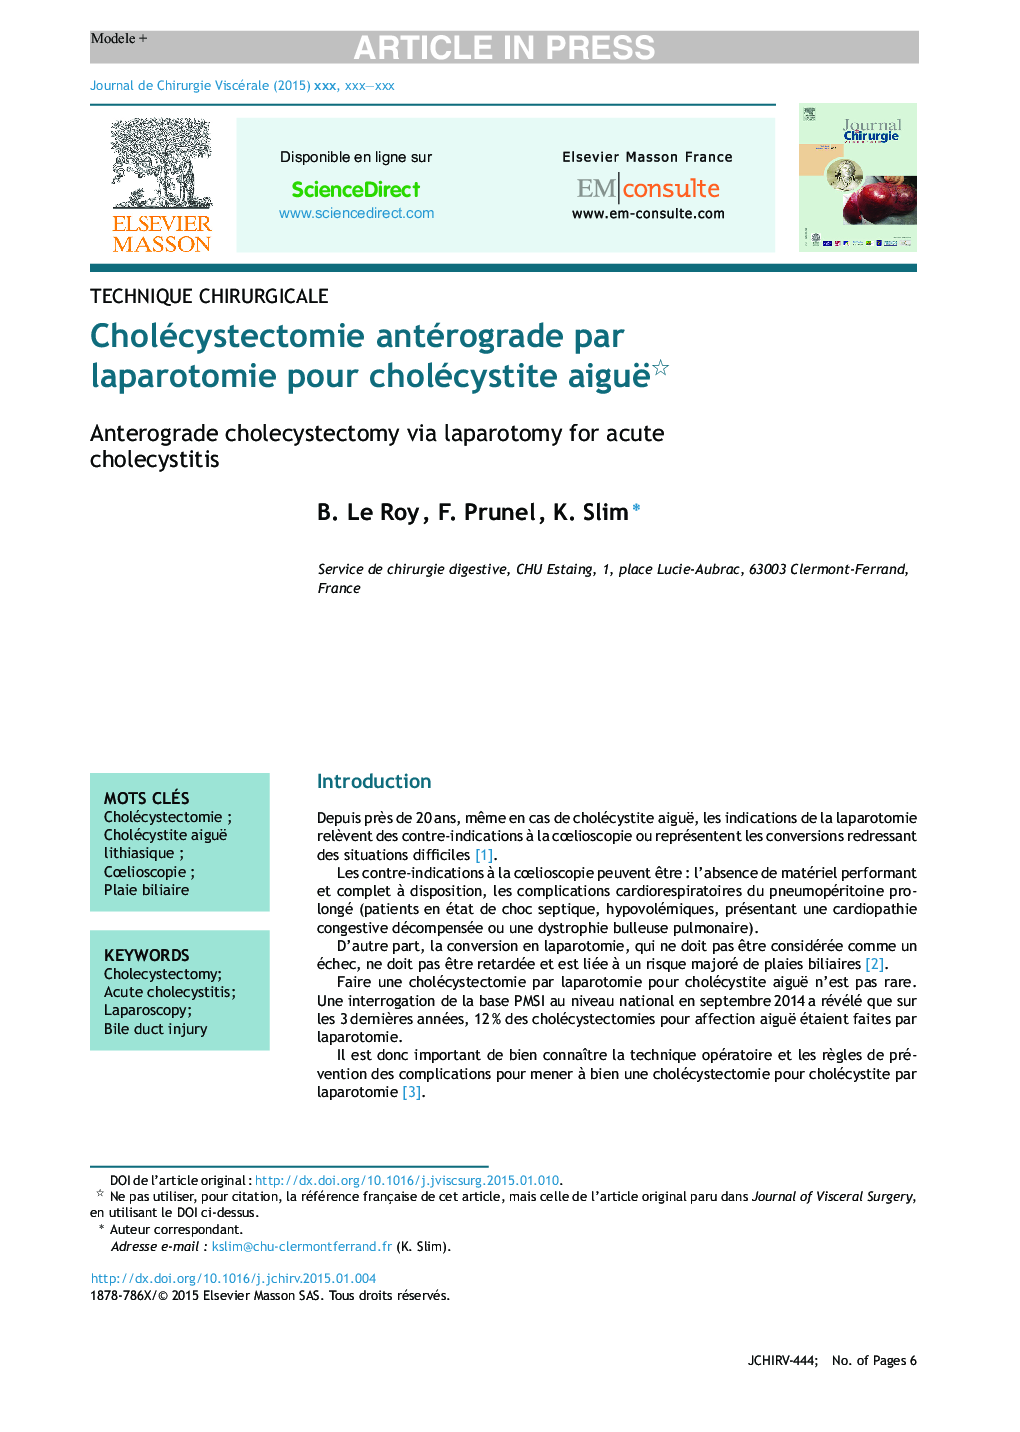 Cholécystectomie antérograde par laparotomie pour cholécystite aiguë